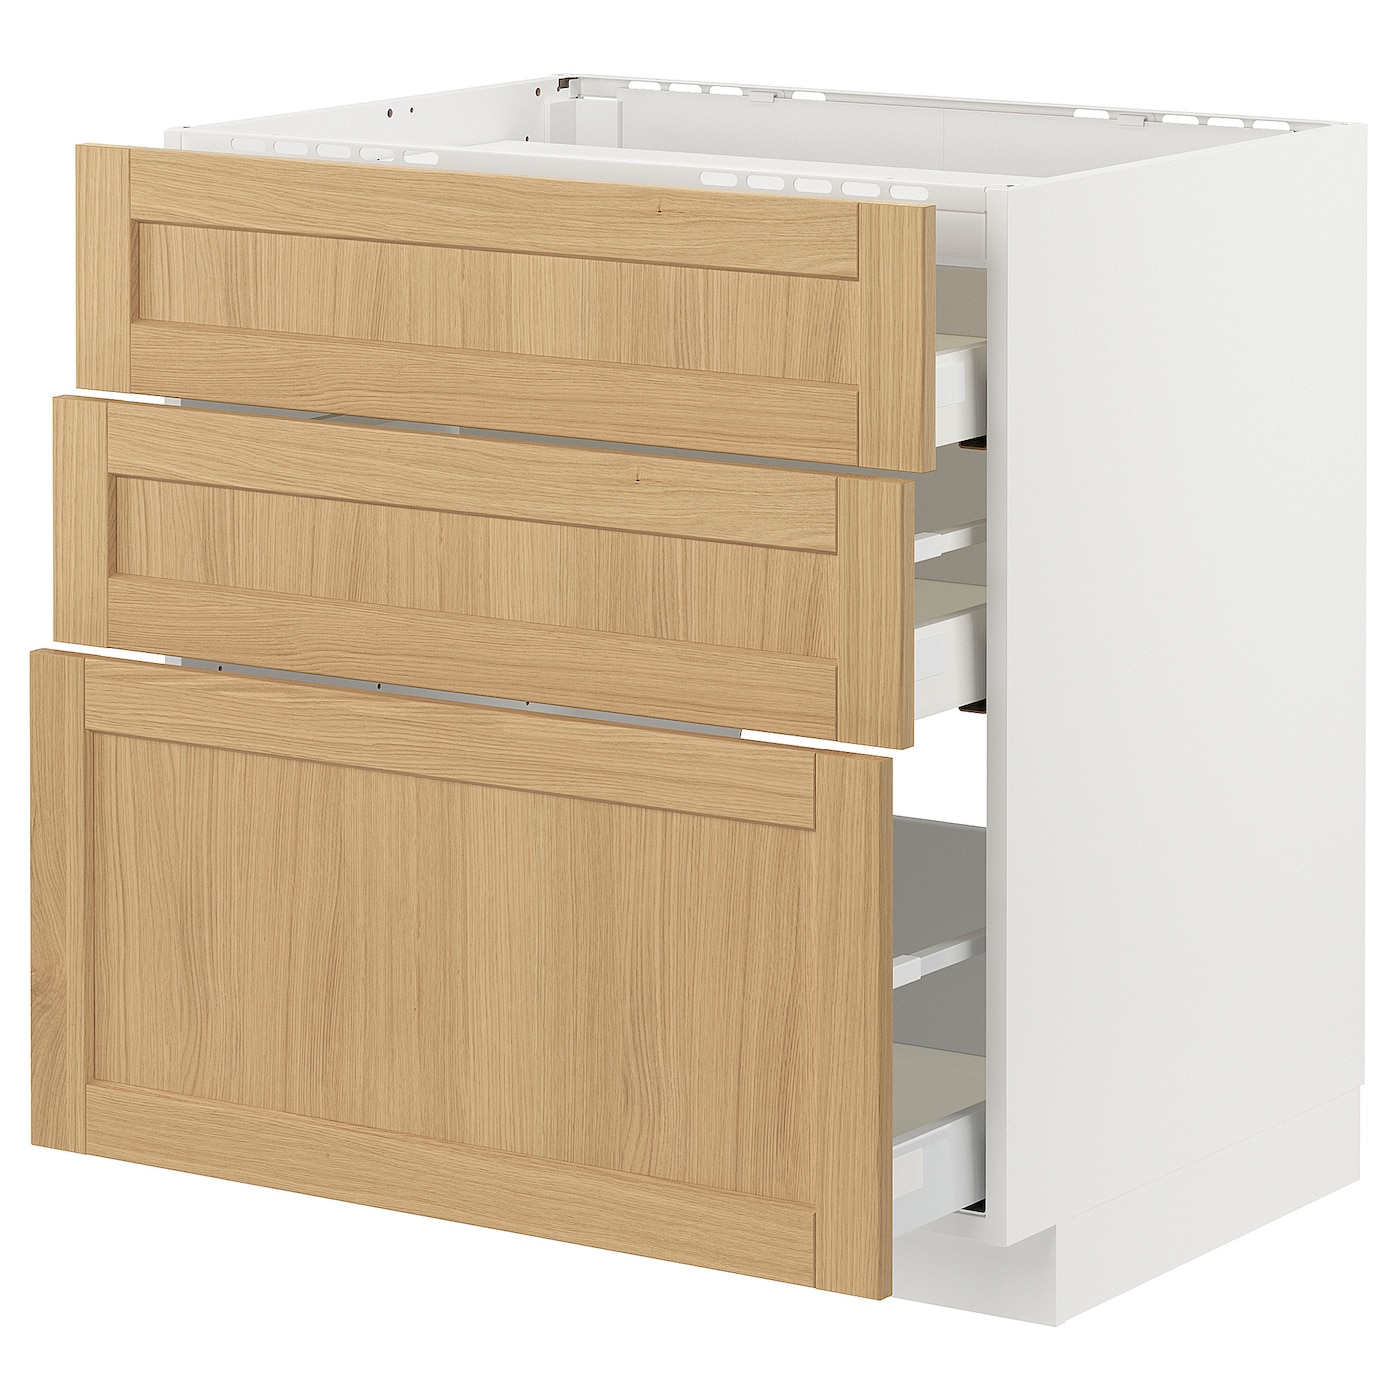 Напольный шкаф - METOD / MAXIMERA IKEA/ МЕТОД/ МАКСИМЕРА ИКЕА,  80х60 см, белый/ под беленый дуб